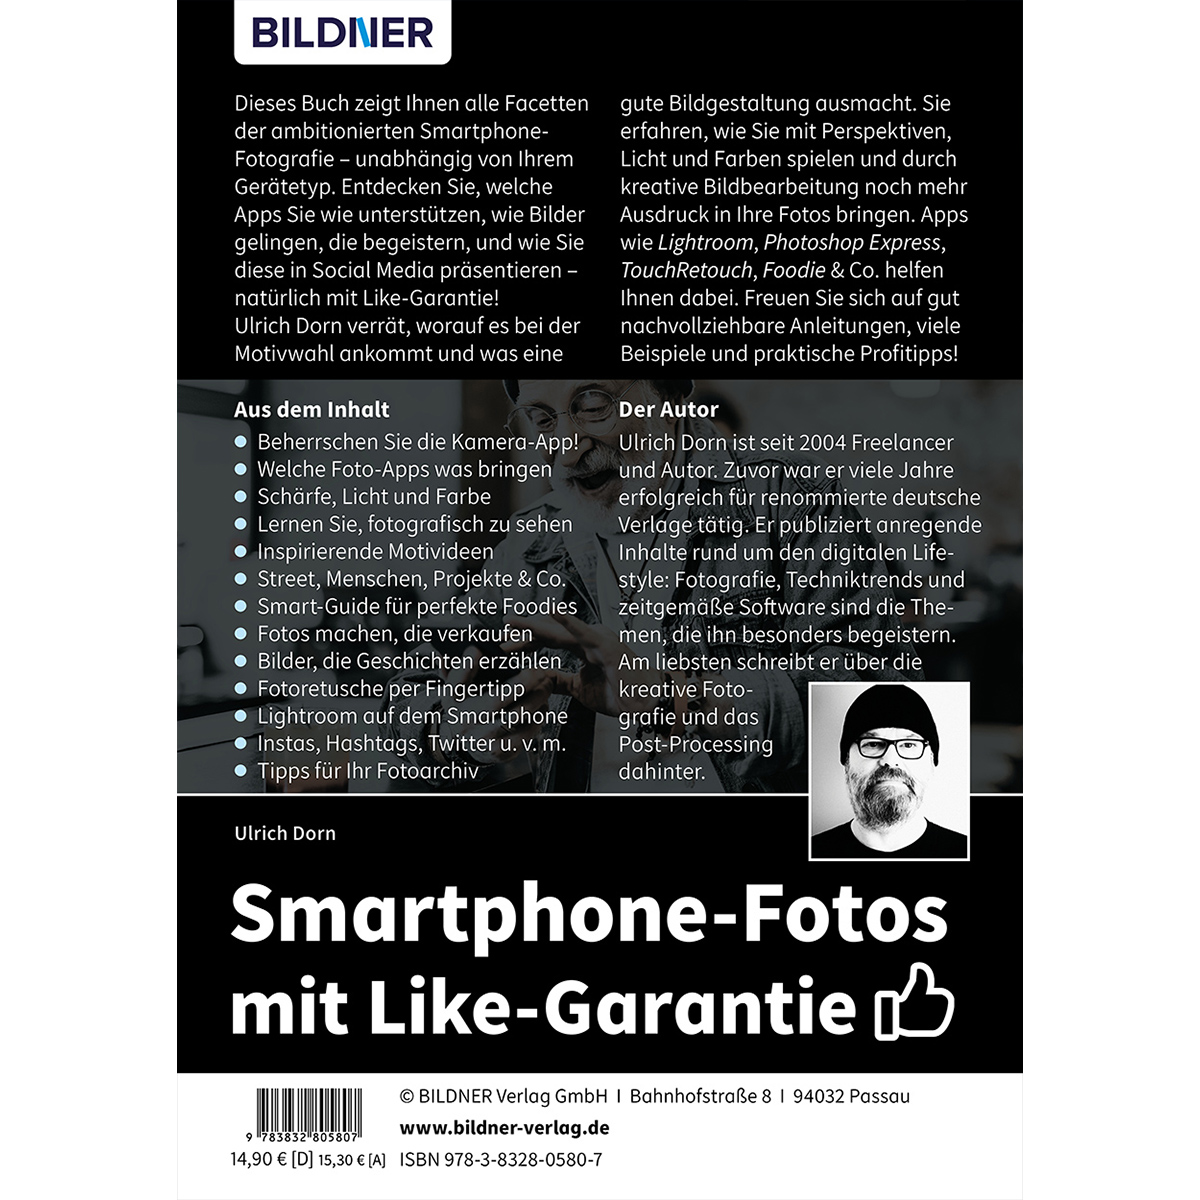 Auflage: - Mehr neue mit Apps! Smartphone-Fotos Like-Garantie Tipps, Topaktuelle